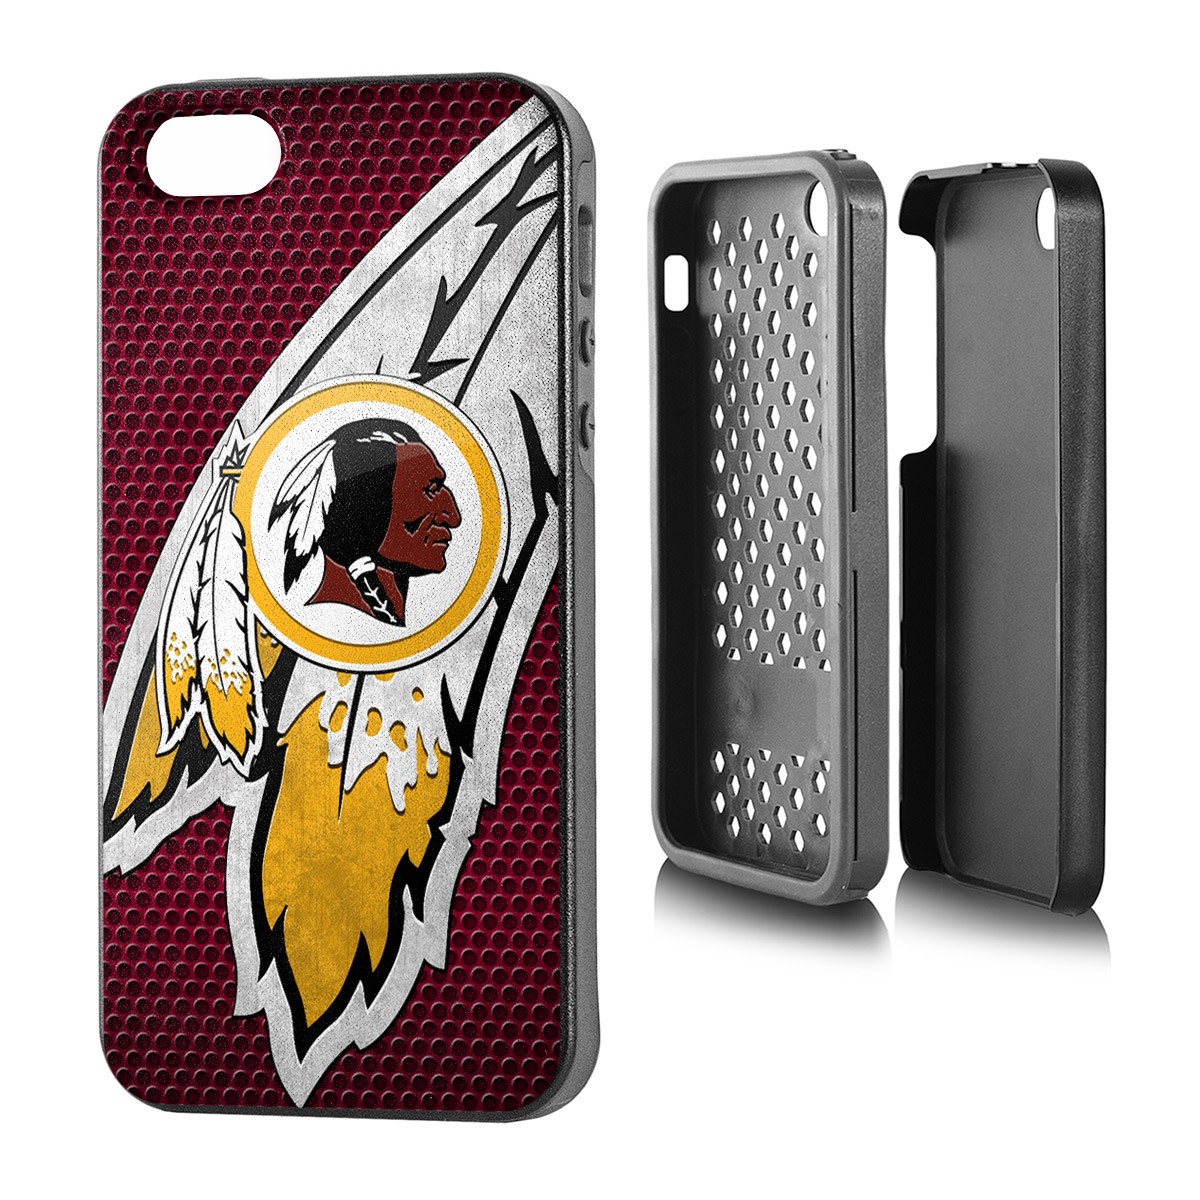 Washington Redskins Iphone 5 Rugged Series Case - Washington Redskins - HD Wallpaper 